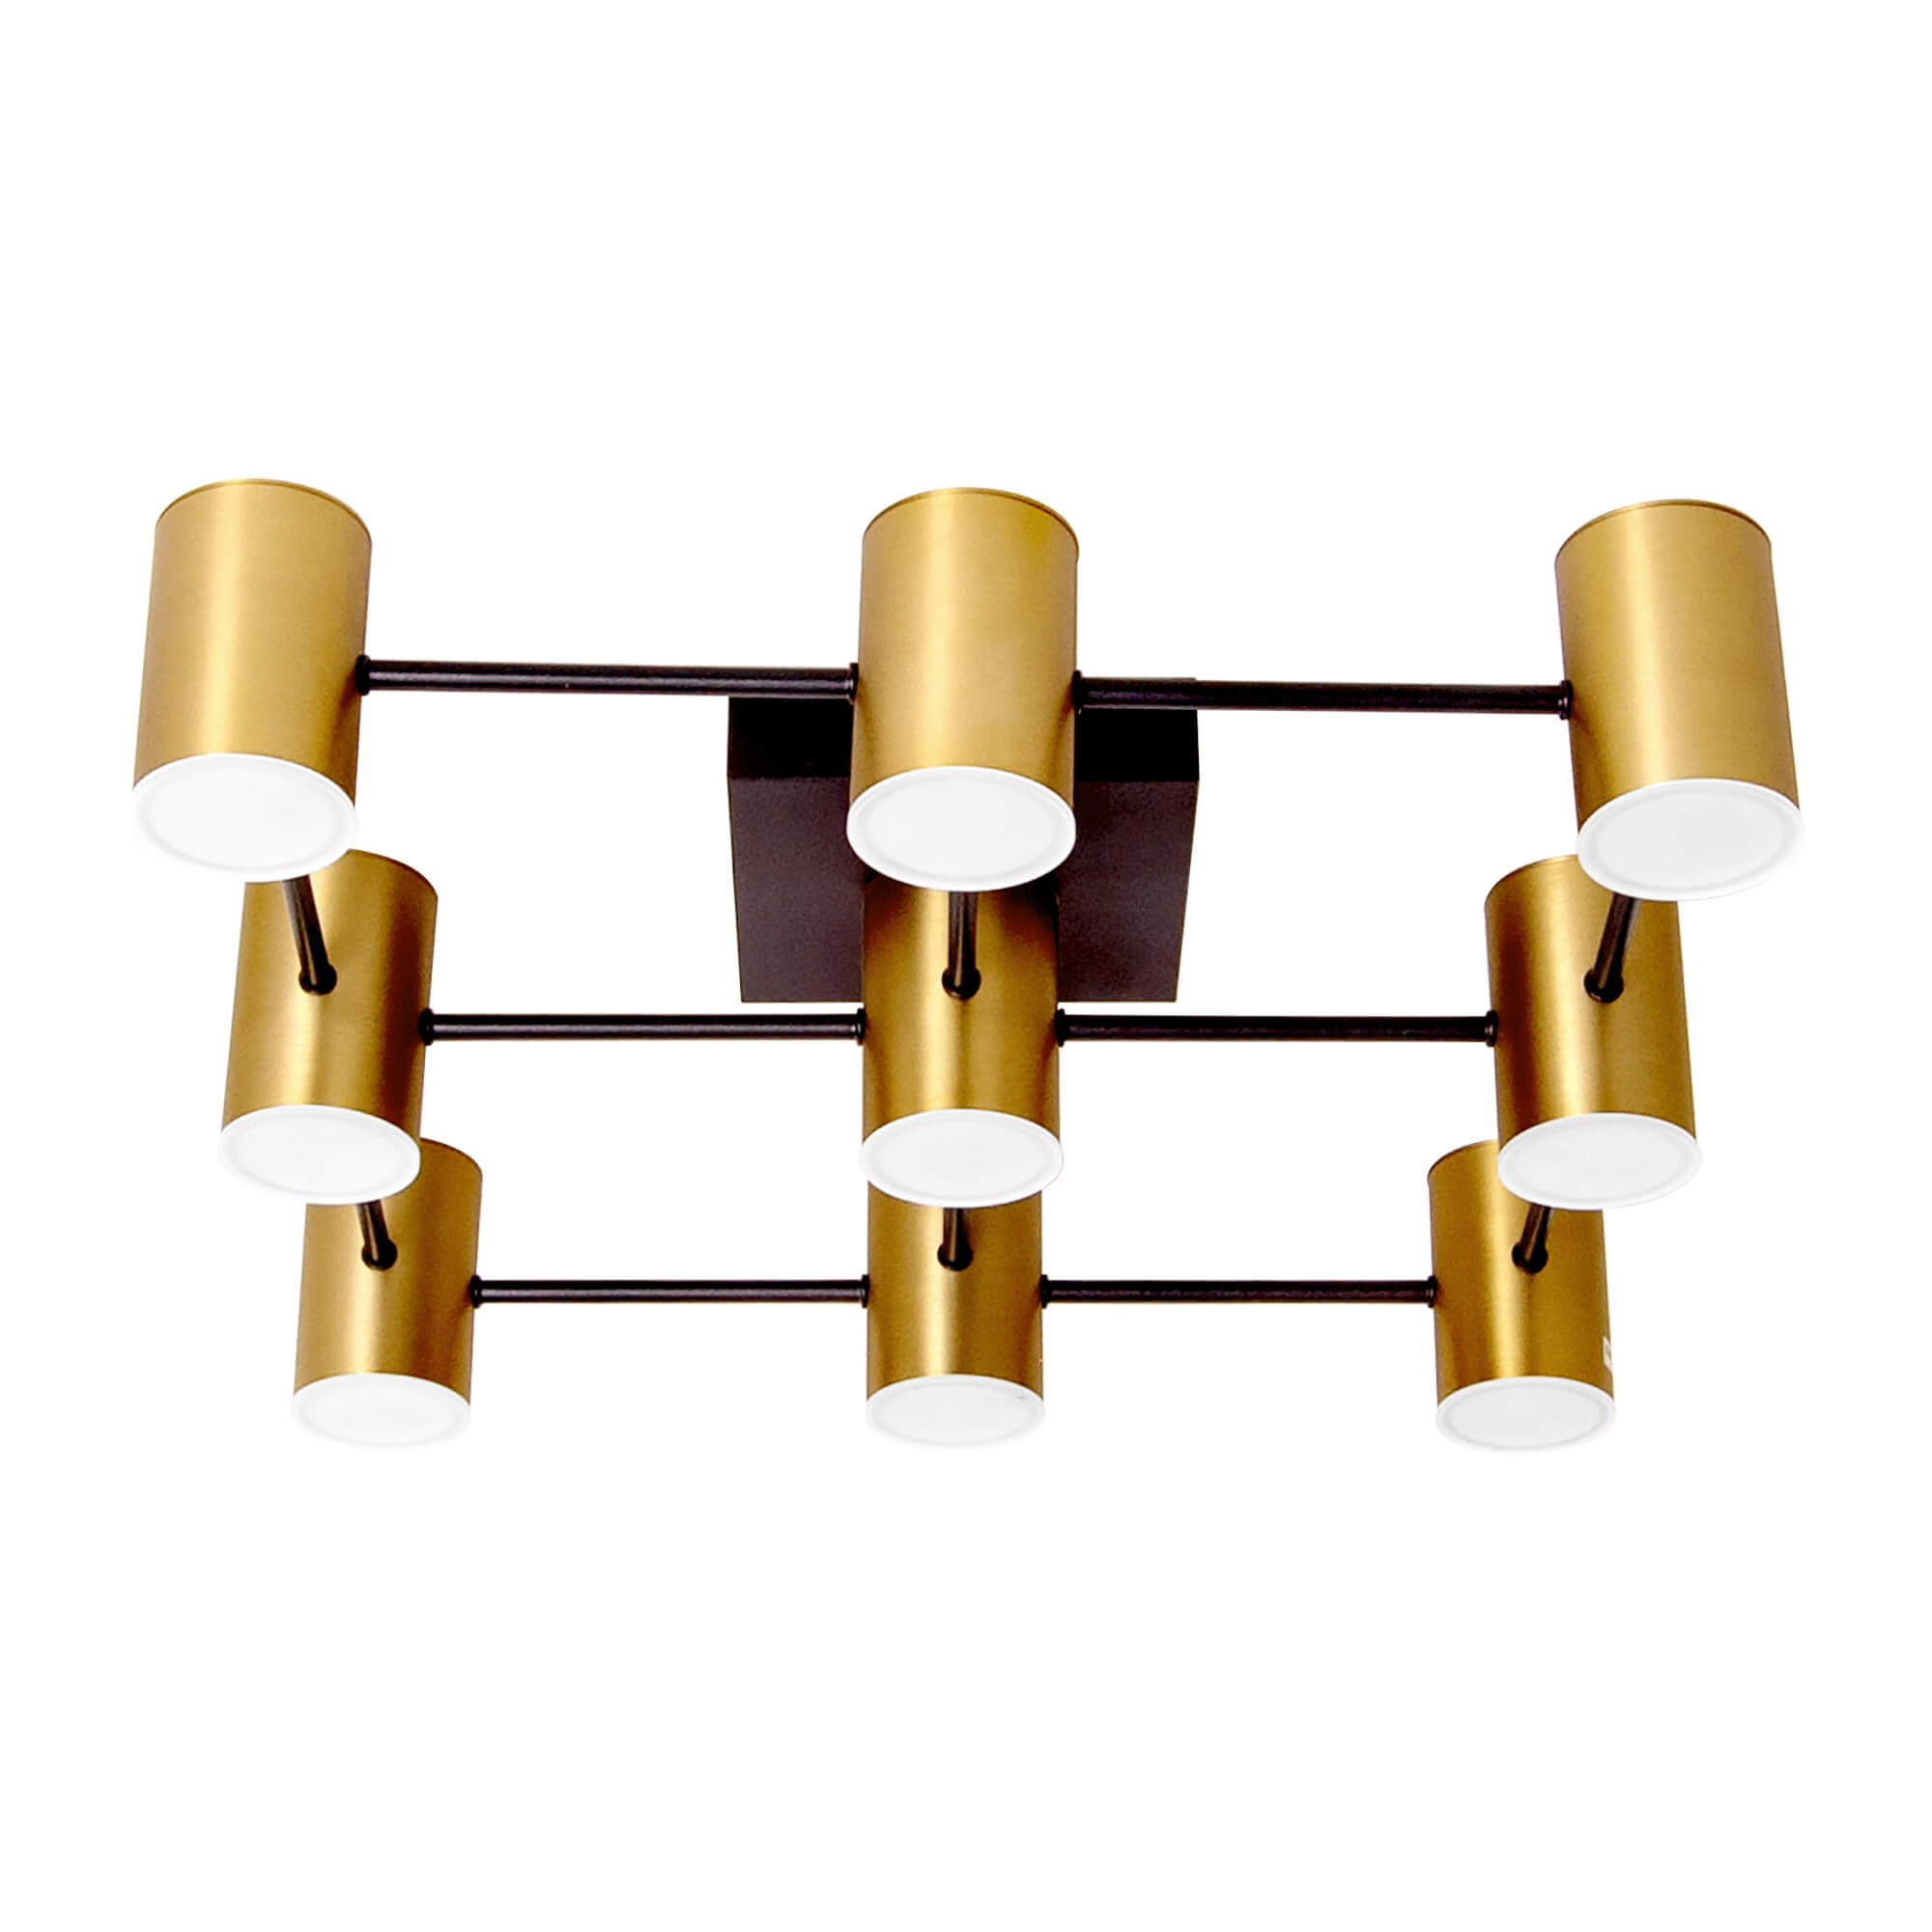 Domicilio Design, Lampa suspendata BOUGIE S2 - Design nou, negru, auriu